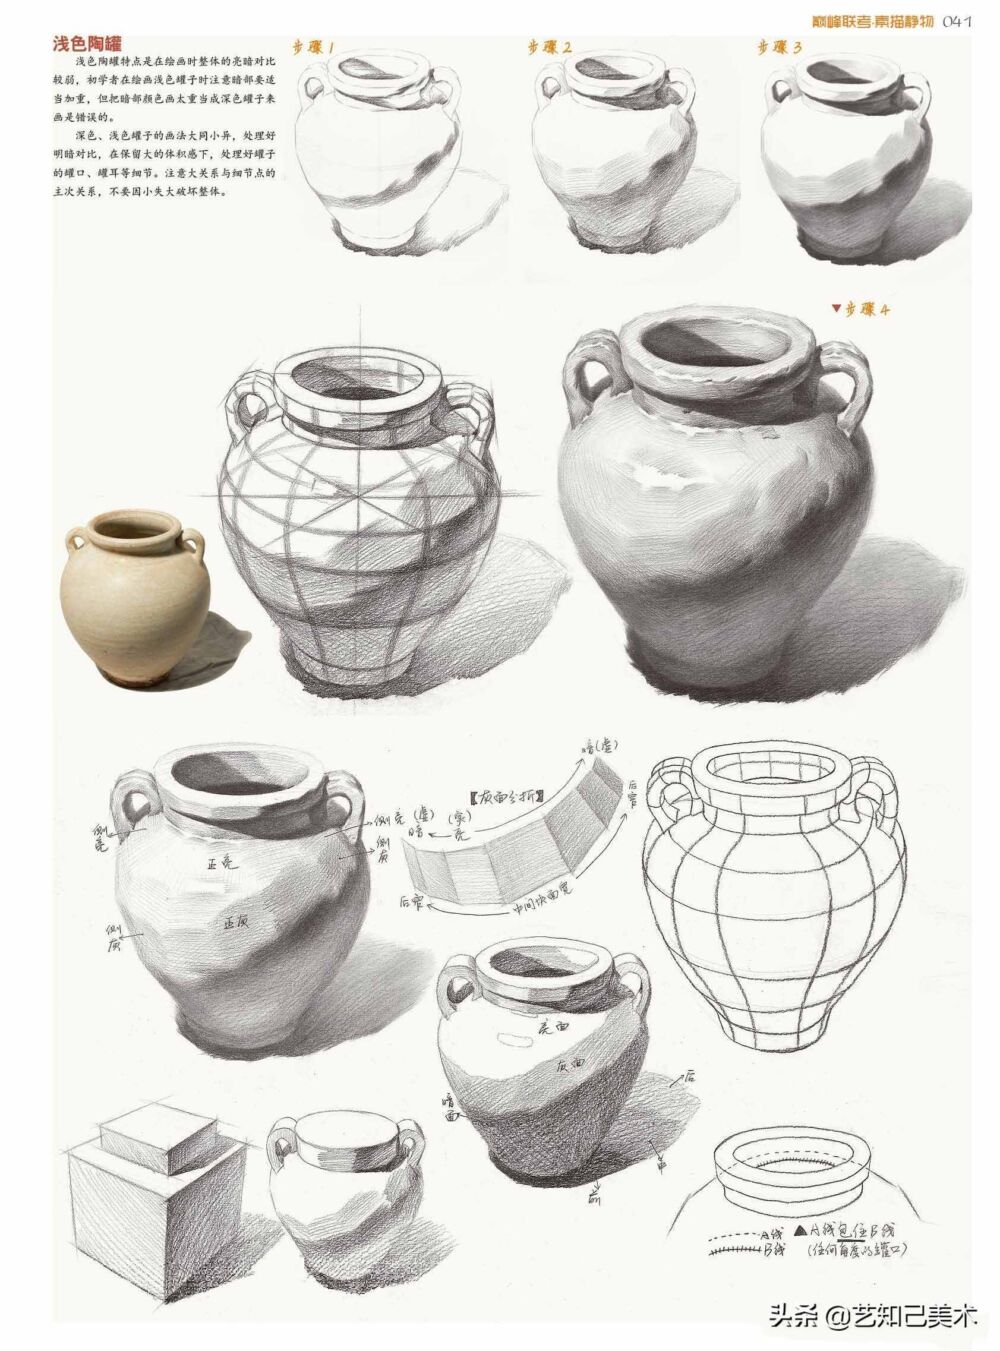 讲讲素描静物中的陶罐，那些美术生们看不到的小细节